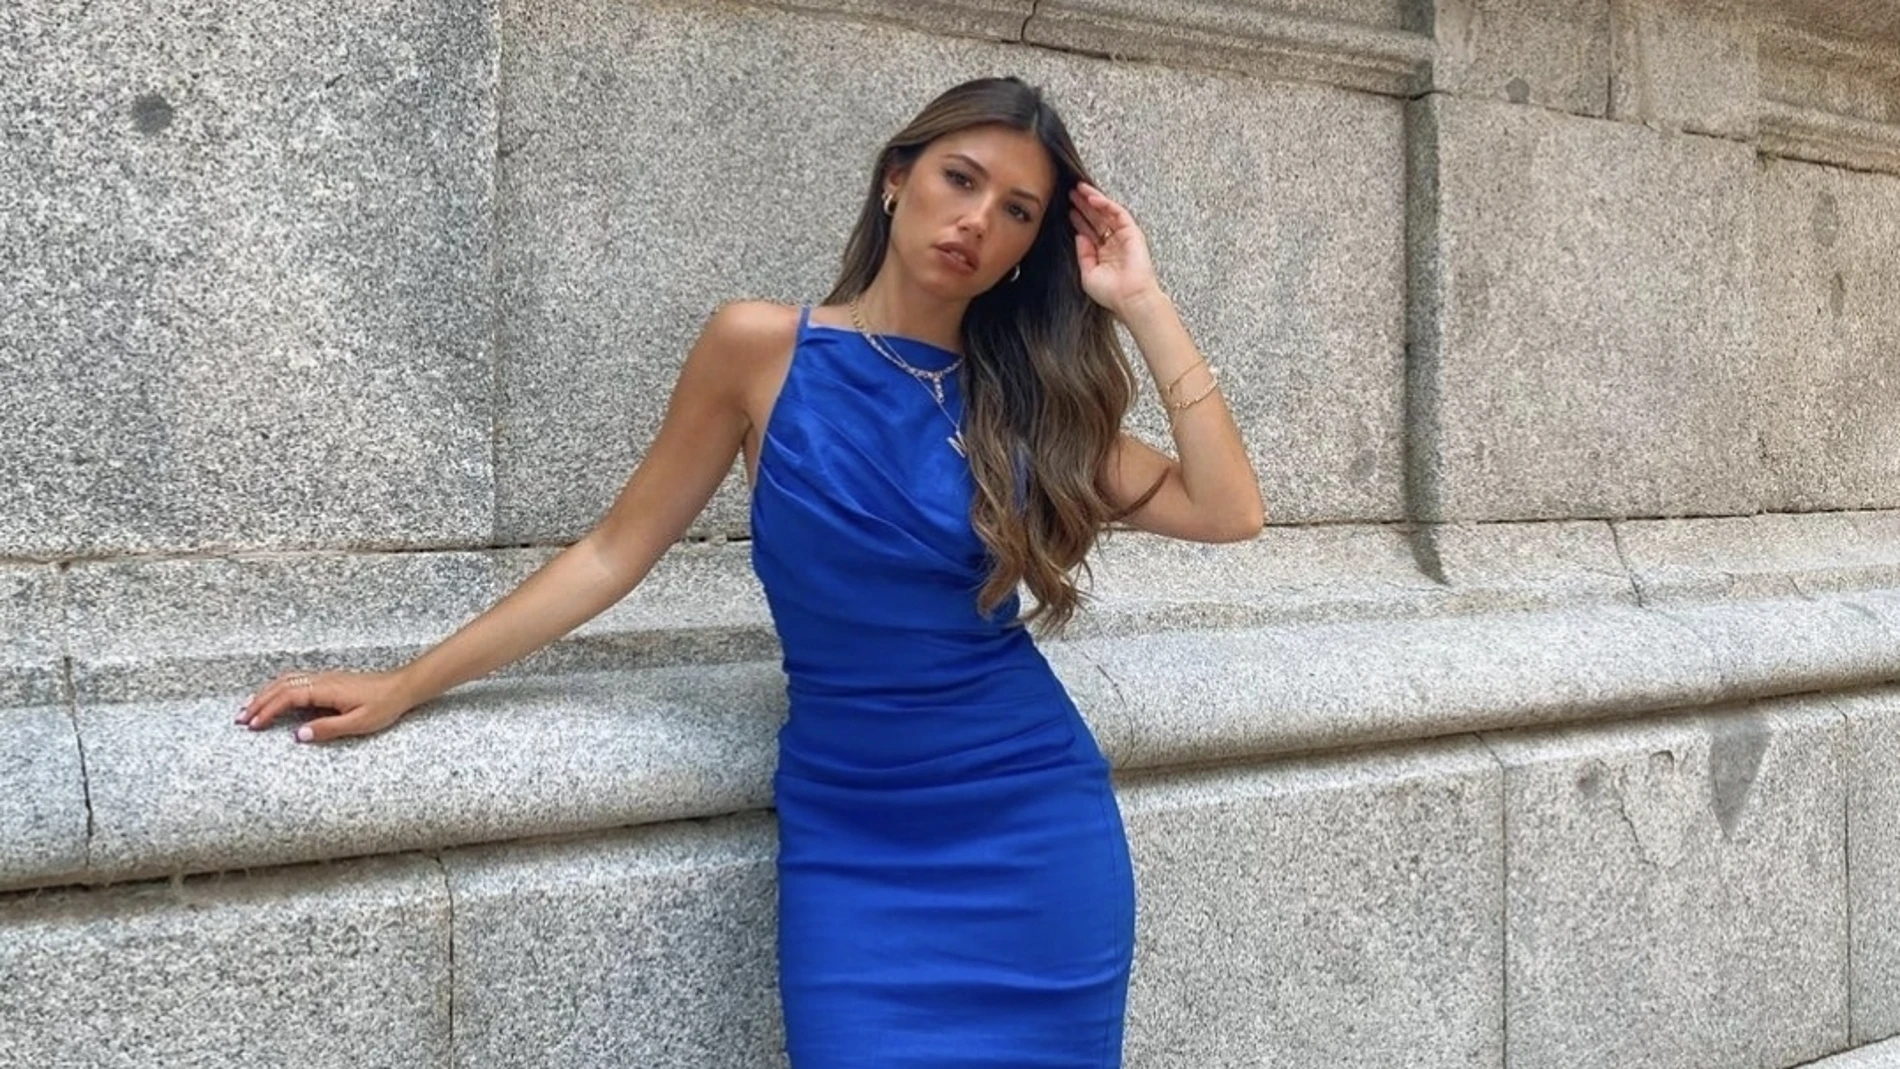 María Segarra con vestido de estilo lencero/ Instagram @mariasegarr